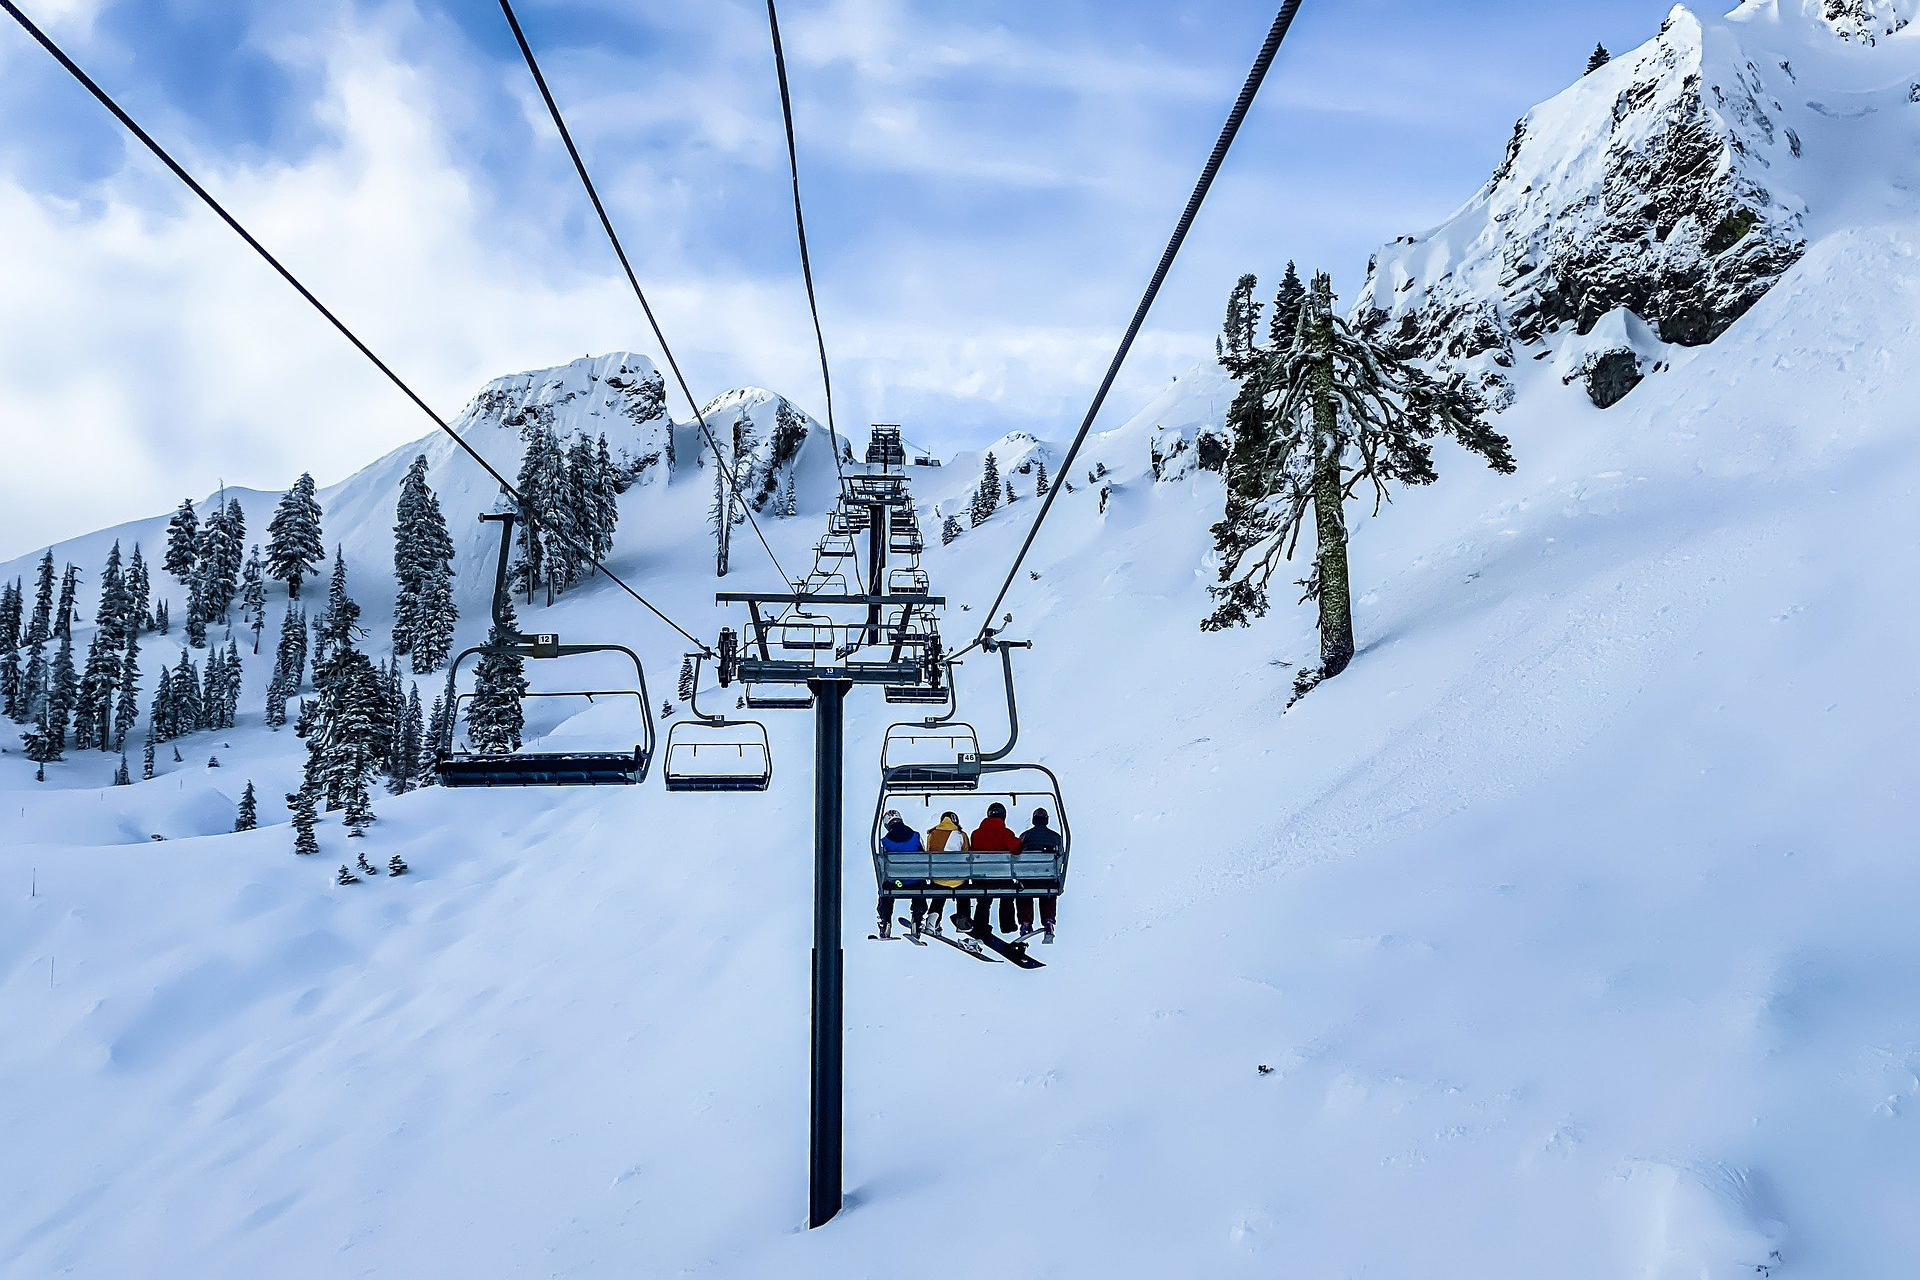 Skifahren macht Spaß, aber wie klimaschädlich ist es? Bild: Pixabay